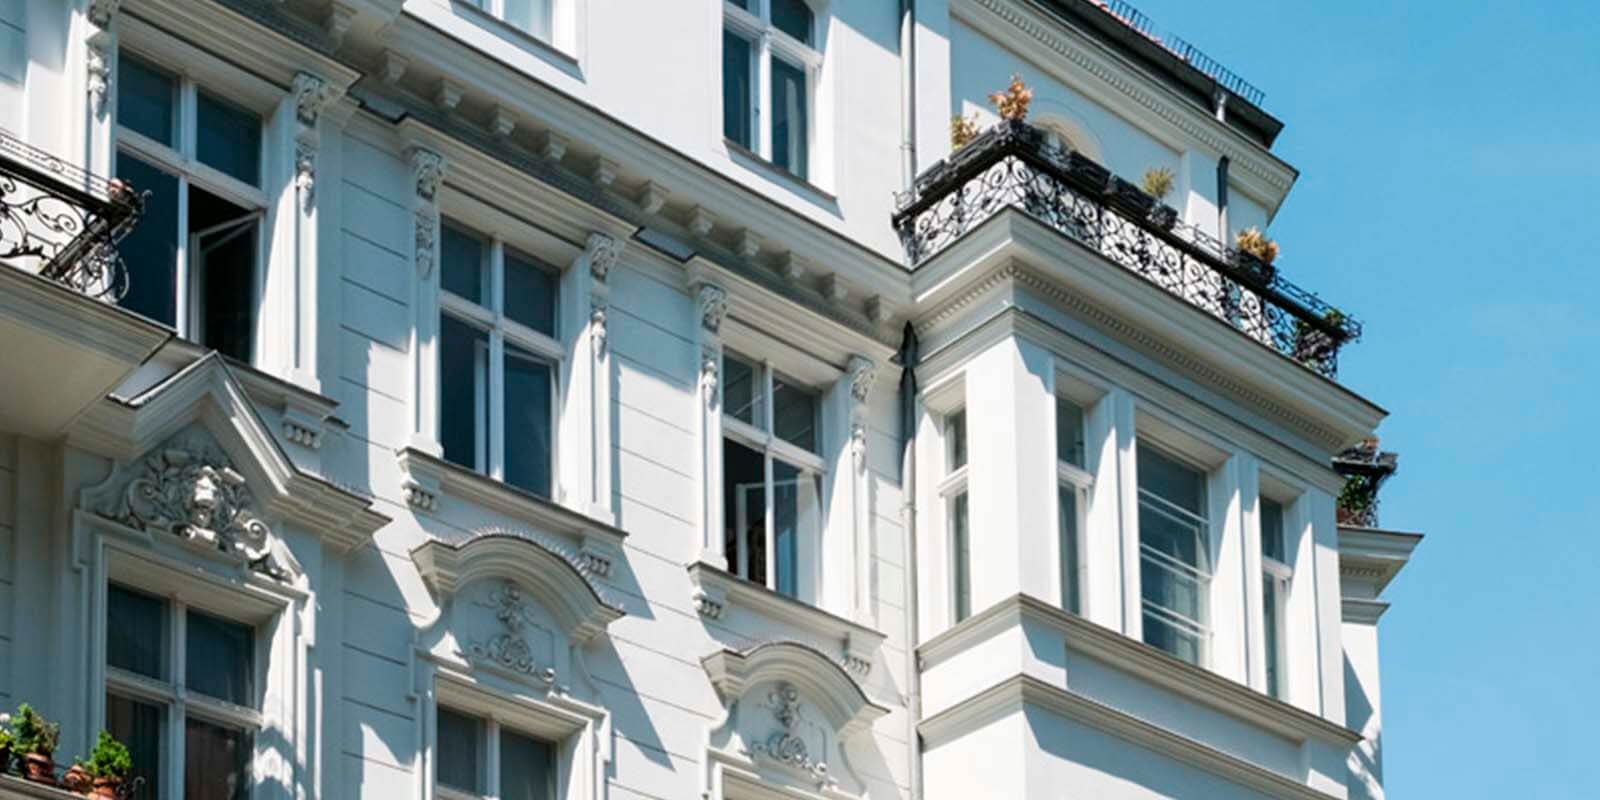 Многоквартирный дом в центре Гамбурга, доходность 3,3 %